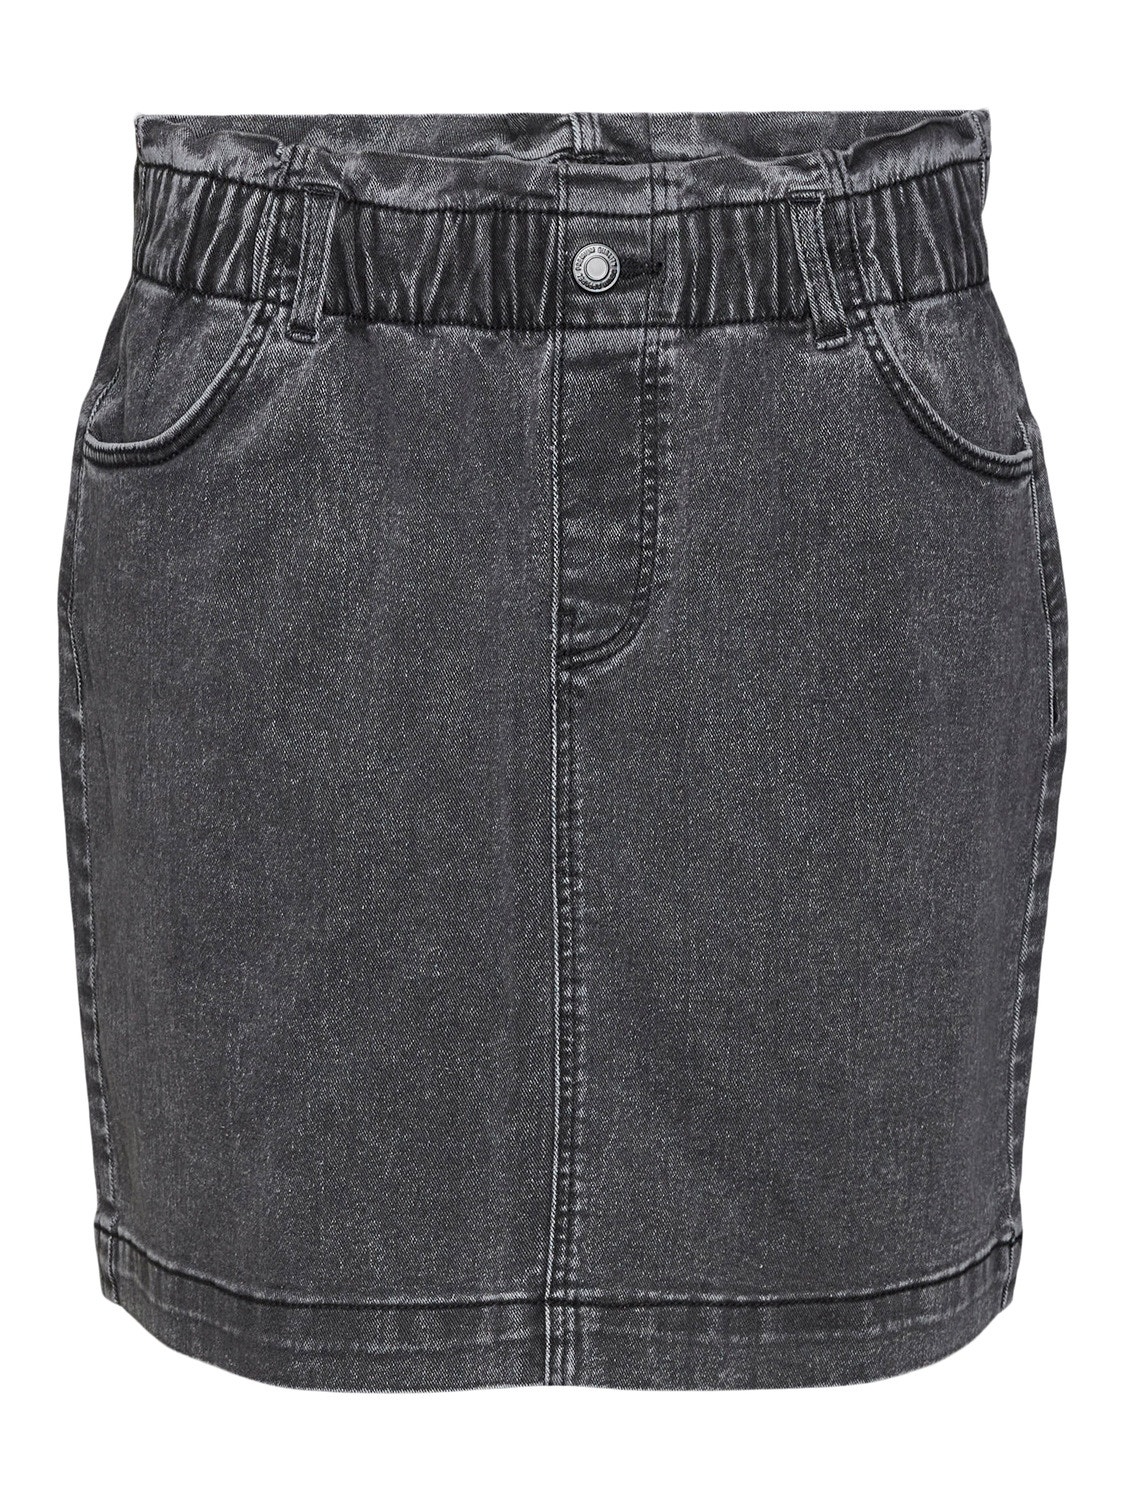 Vero Moda VMALMA Short Skirt -Dark Grey Denim - 10301803